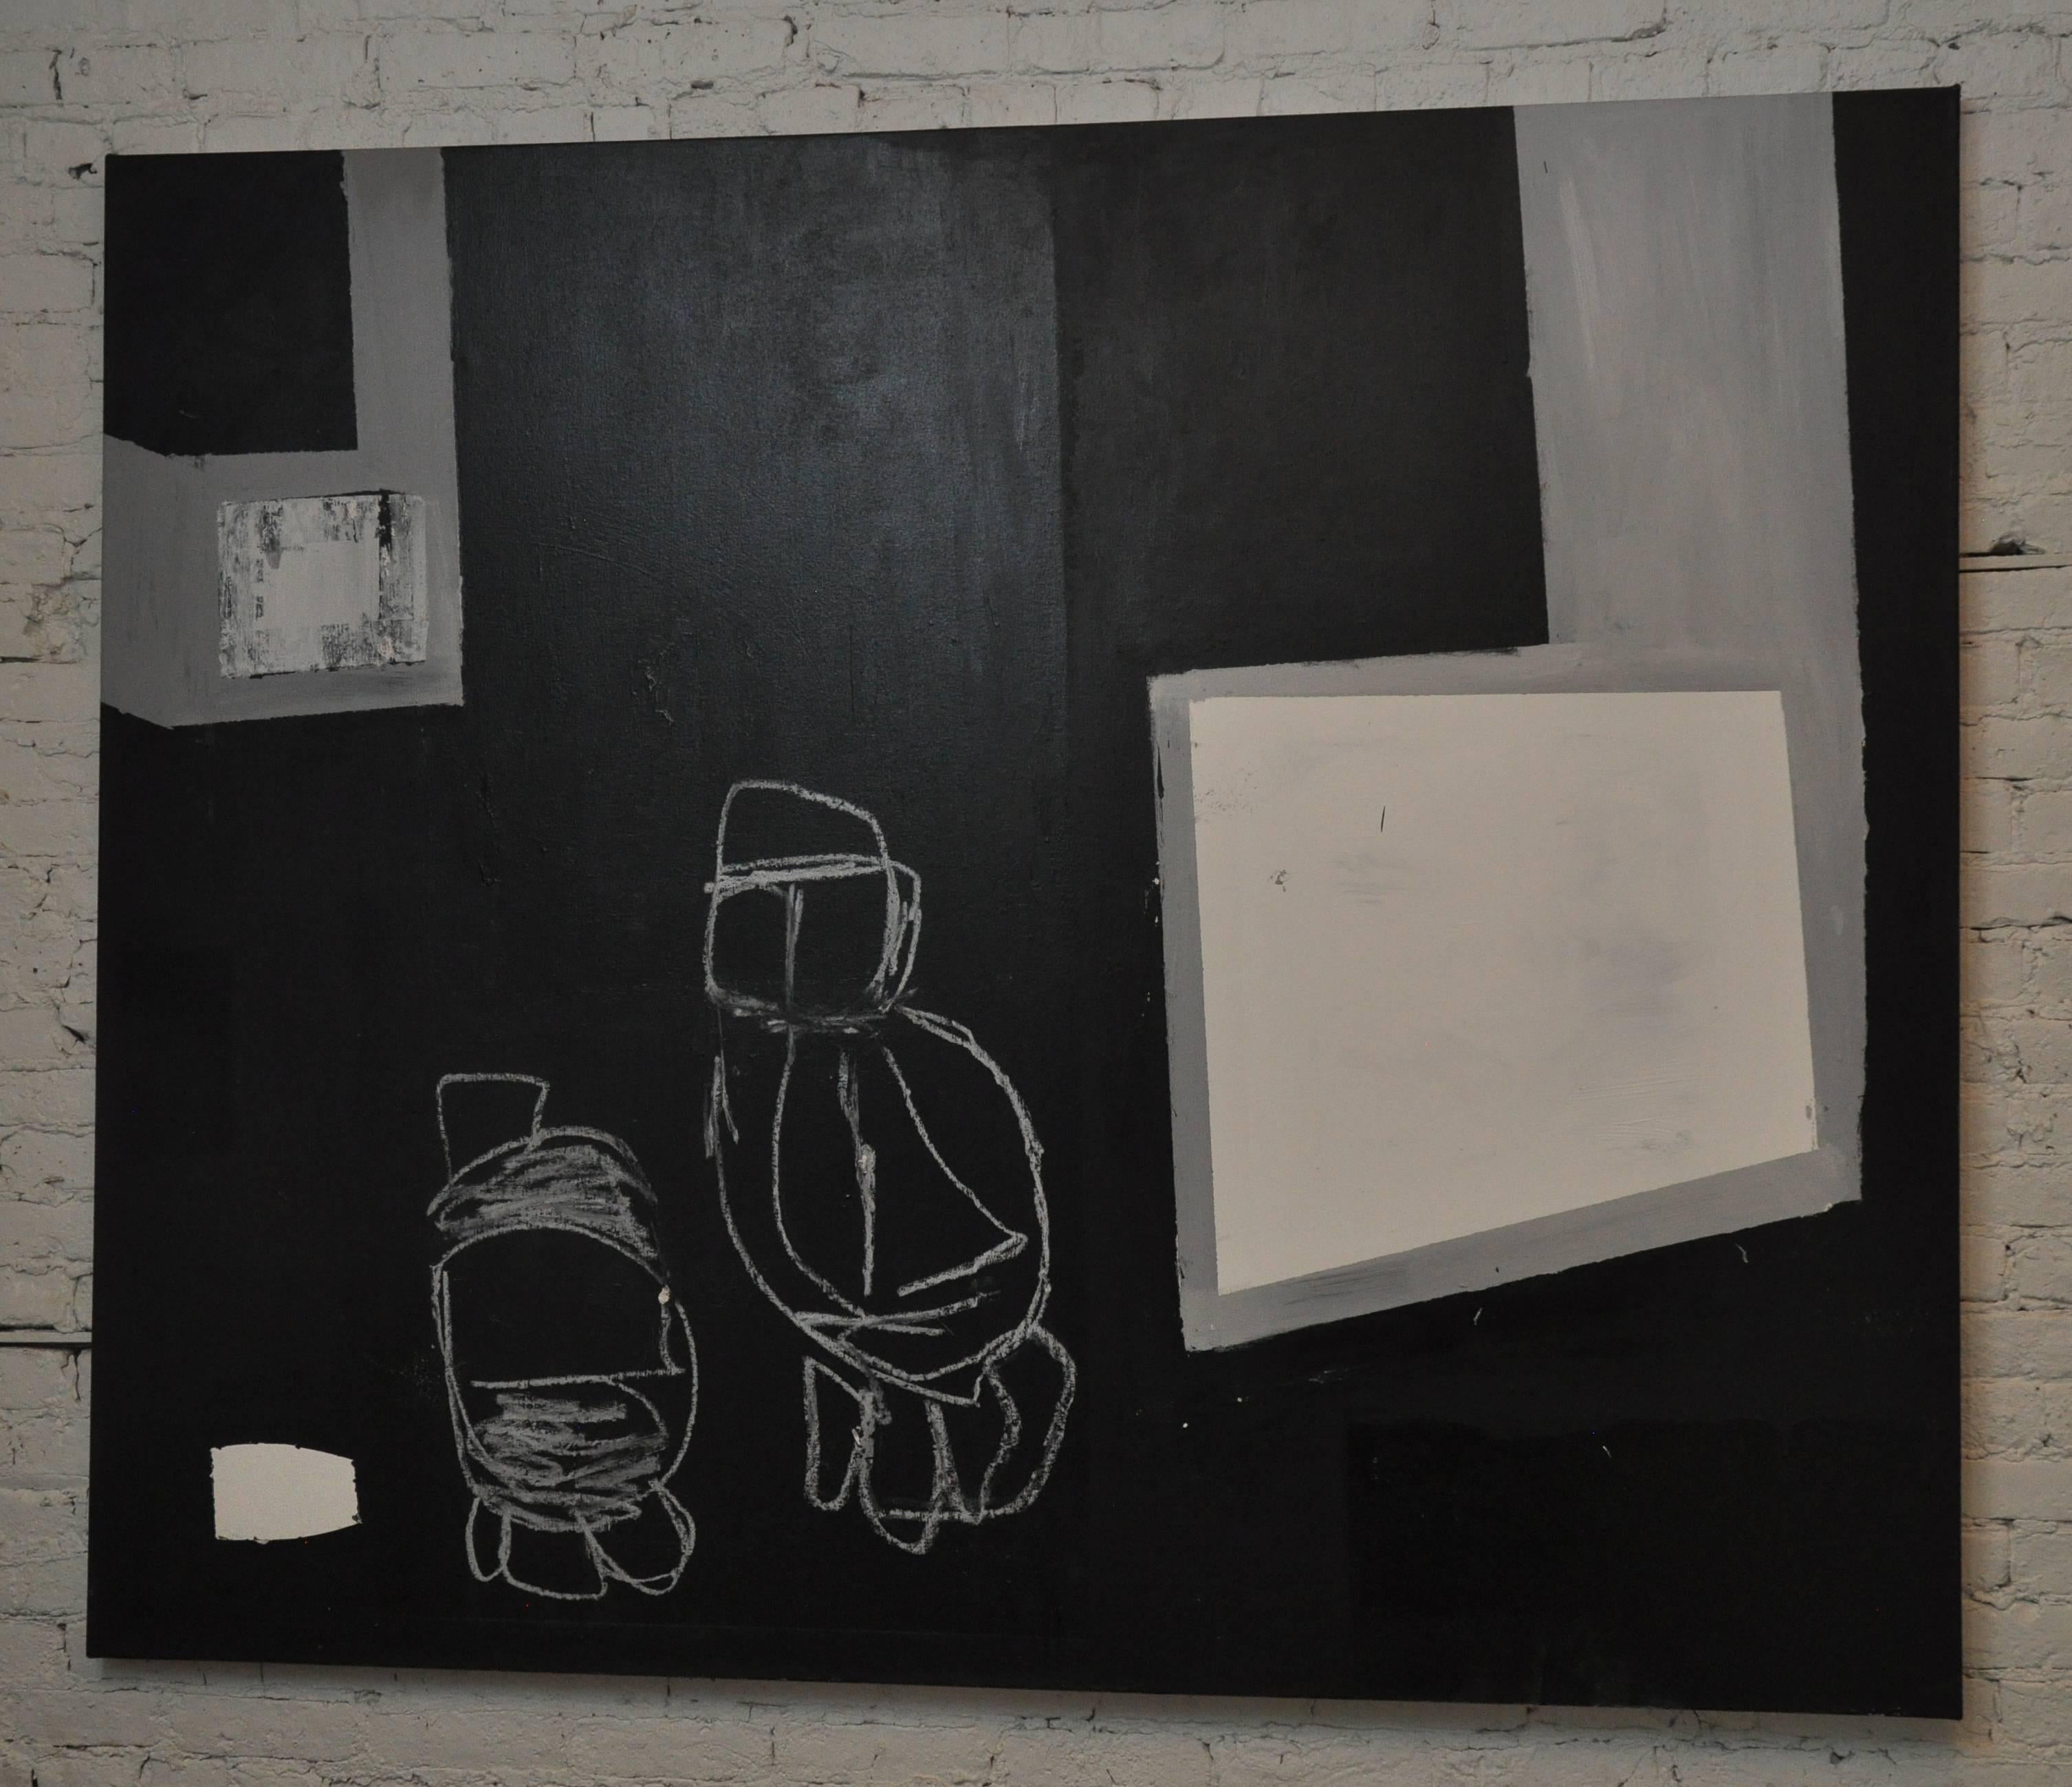 unbetiteltes Gemälde auf Leinwand aus dem 21. Jahrhundert von Greg Dickerson. 
Mischtechnik auf Leinwand, mit Acrylfarbe und Ölpastell. Erstellt im Jahr 2016.
Schwarz und Weiß 
 